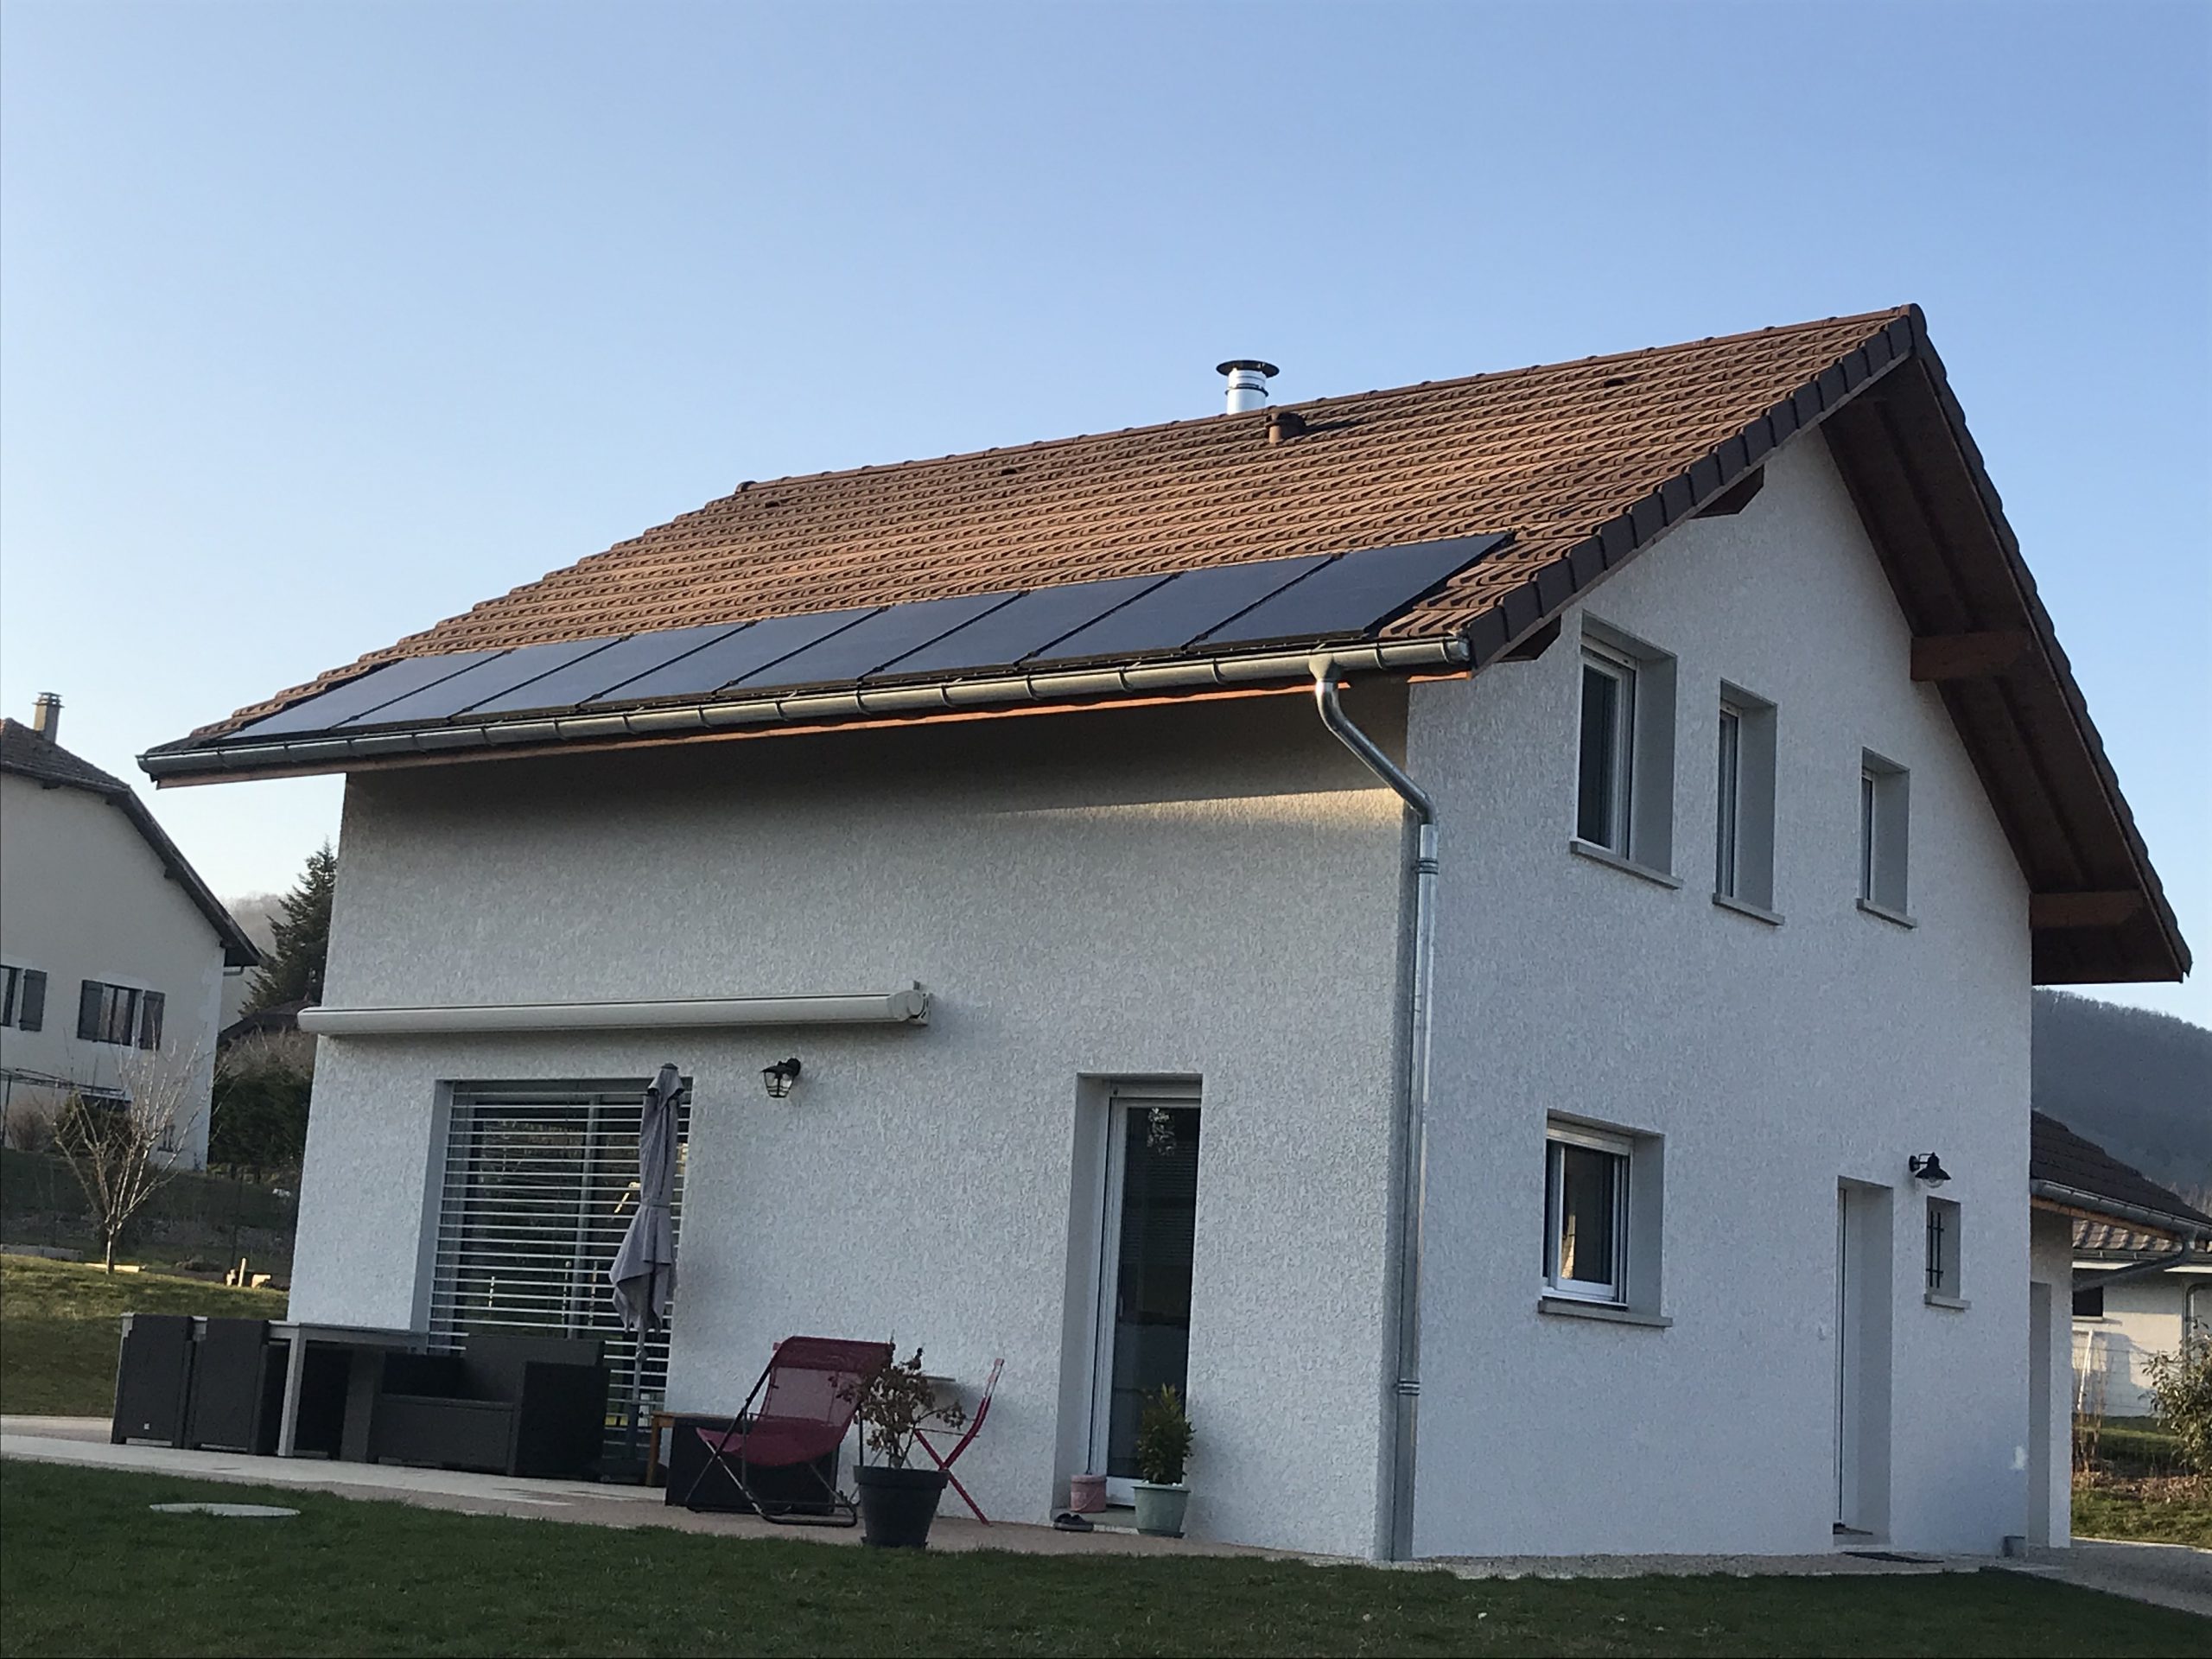 energies services france installation photovoltaique panneaux solaires haute savoie autoconsommation